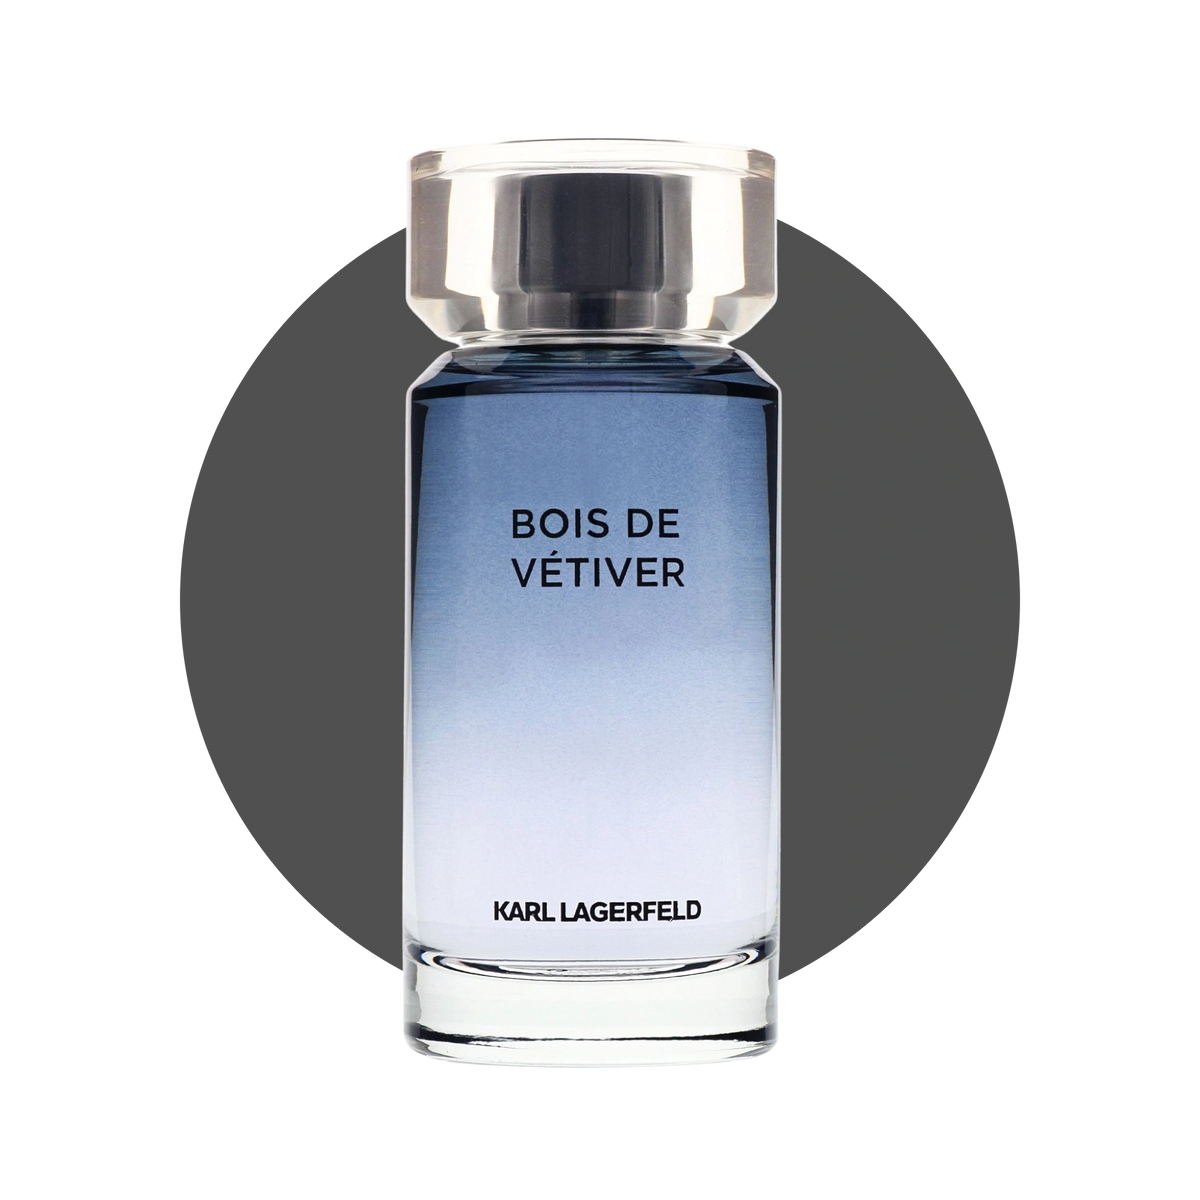 Karl Lagerfeld: Bois De Vetiver (Size: 3ml)